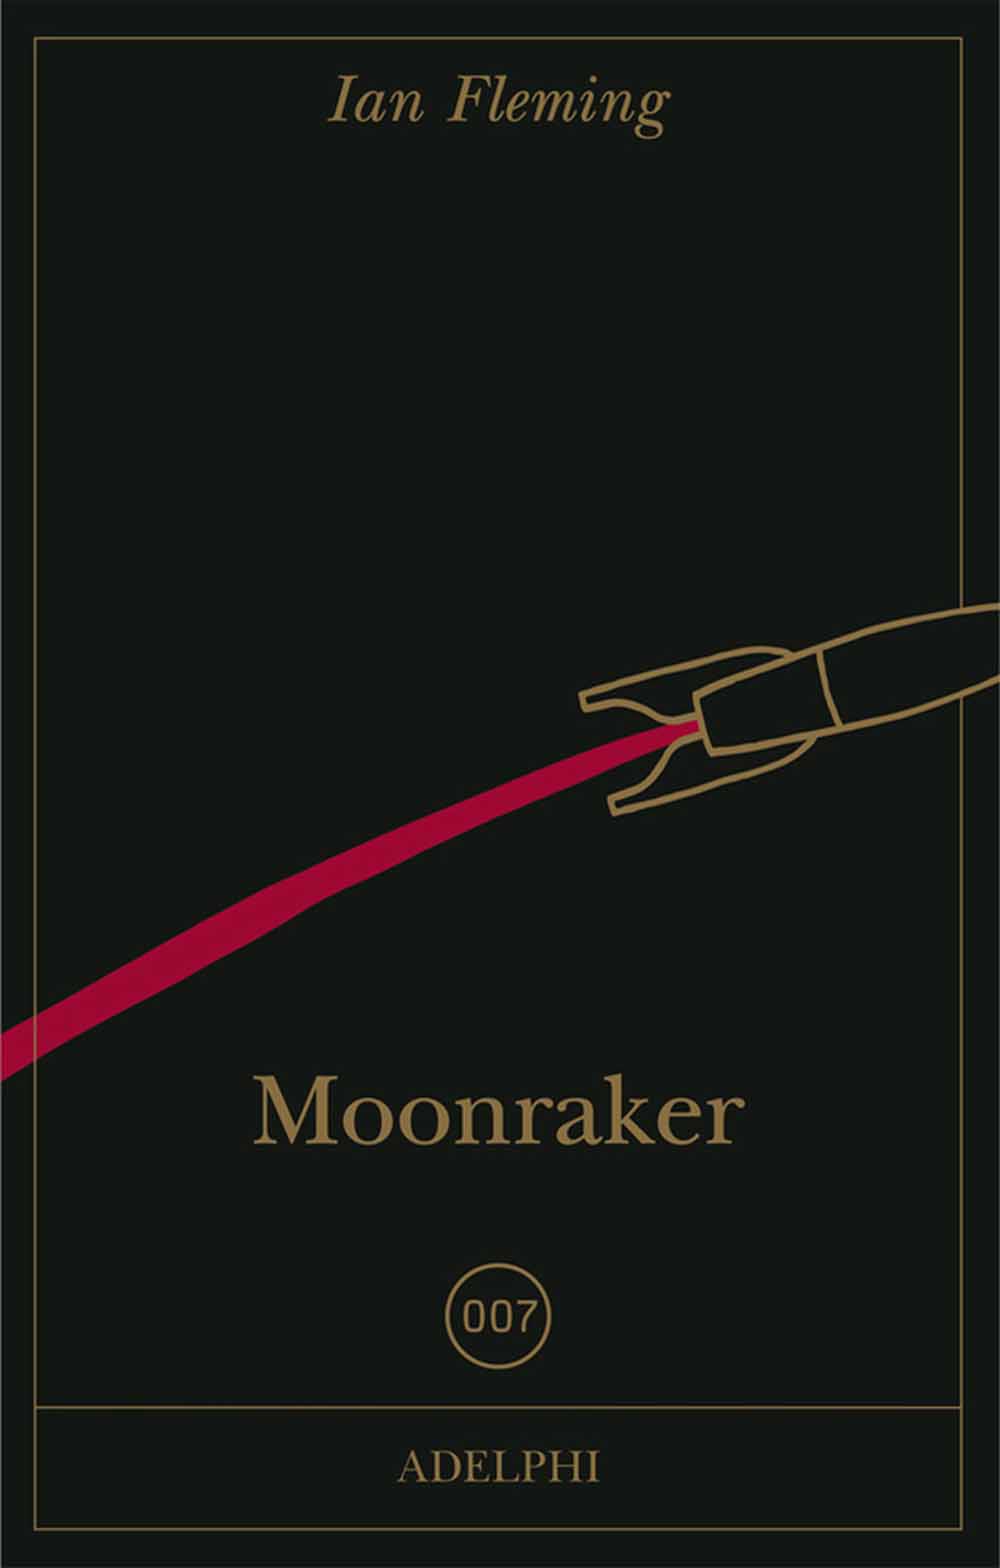 Libri Ian Fleming - 007 Moonraker NUOVO SIGILLATO, EDIZIONE DEL 20/11/2013 SUBITO DISPONIBILE